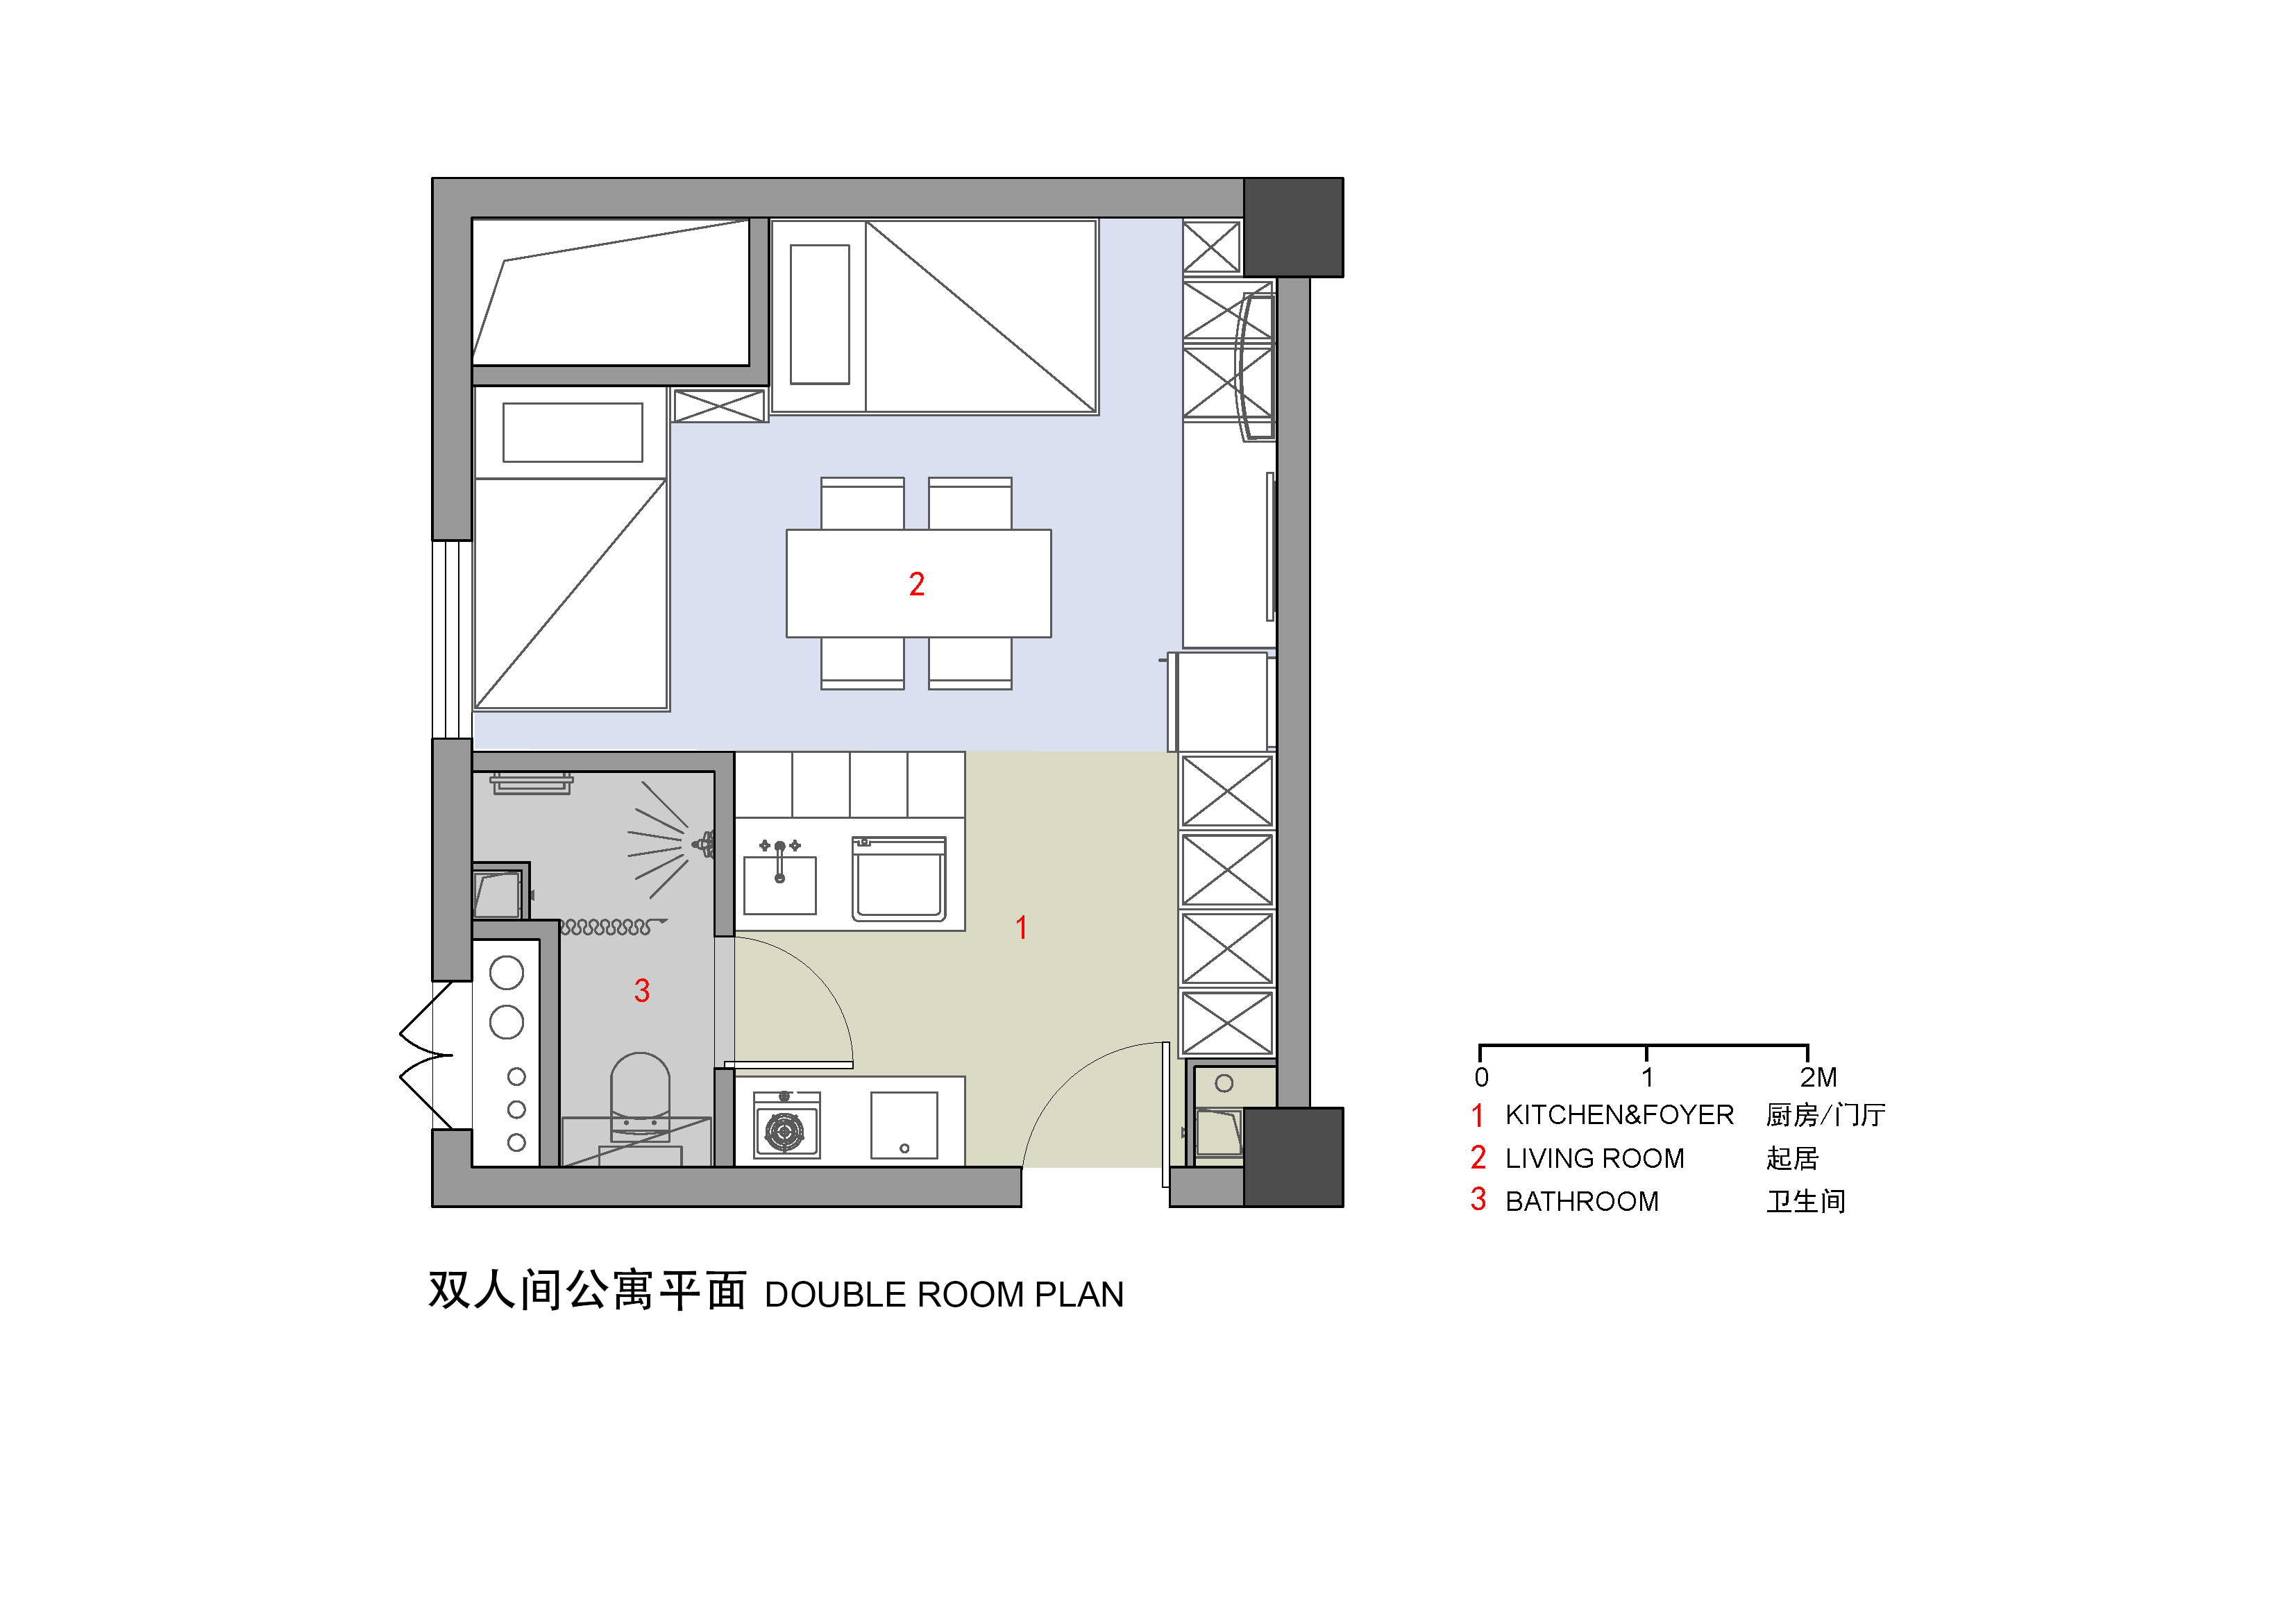 06双人间公寓平面 Double Bed Room Plan.jpg